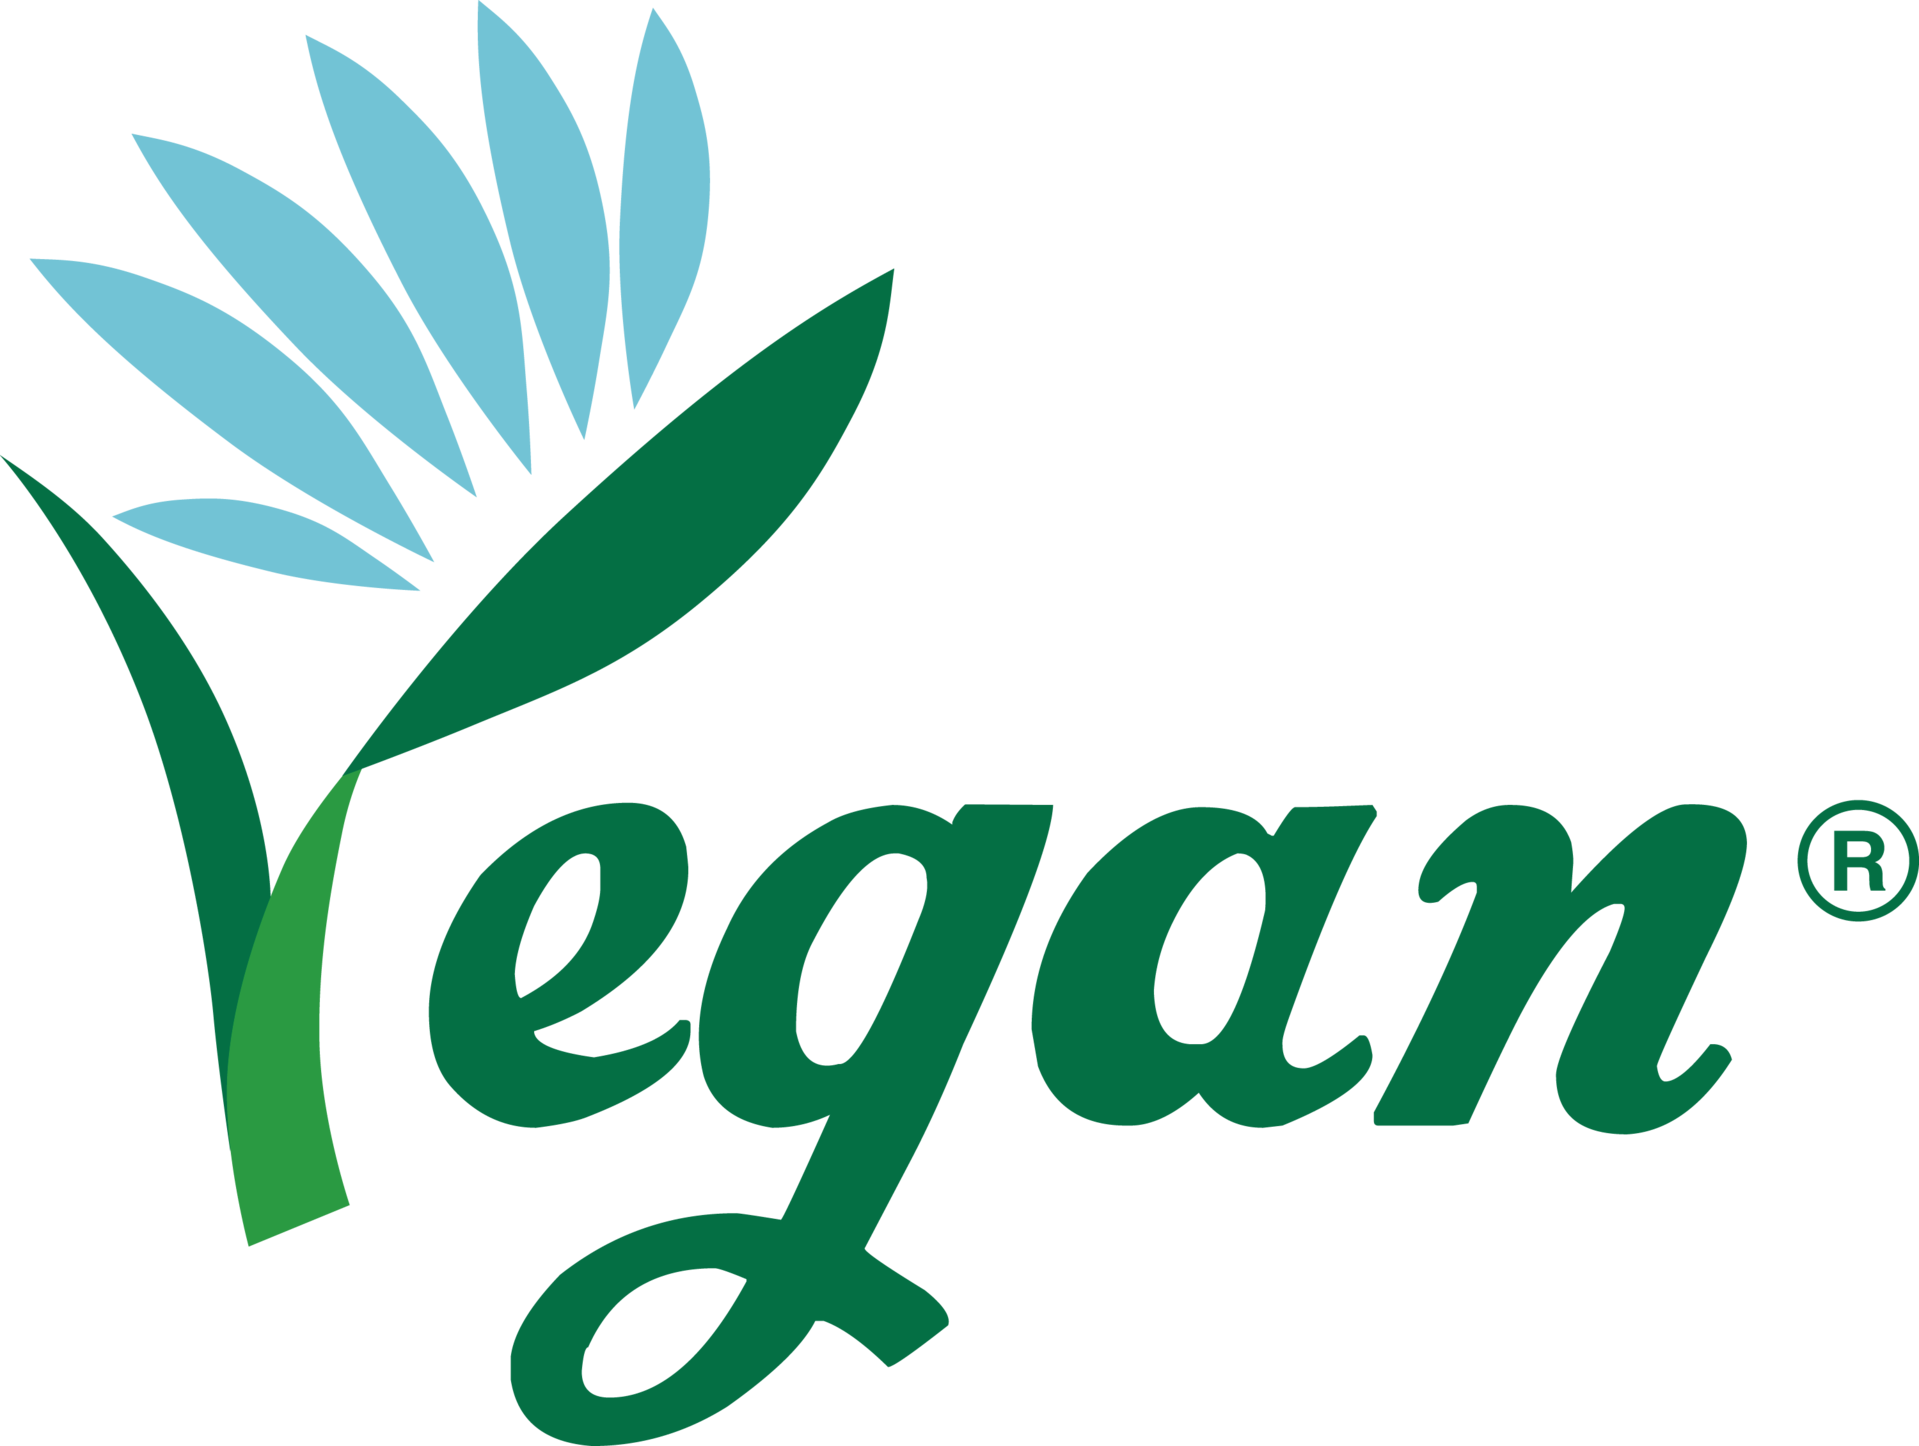 비건 인증 마크(Vegan Certification Mark)